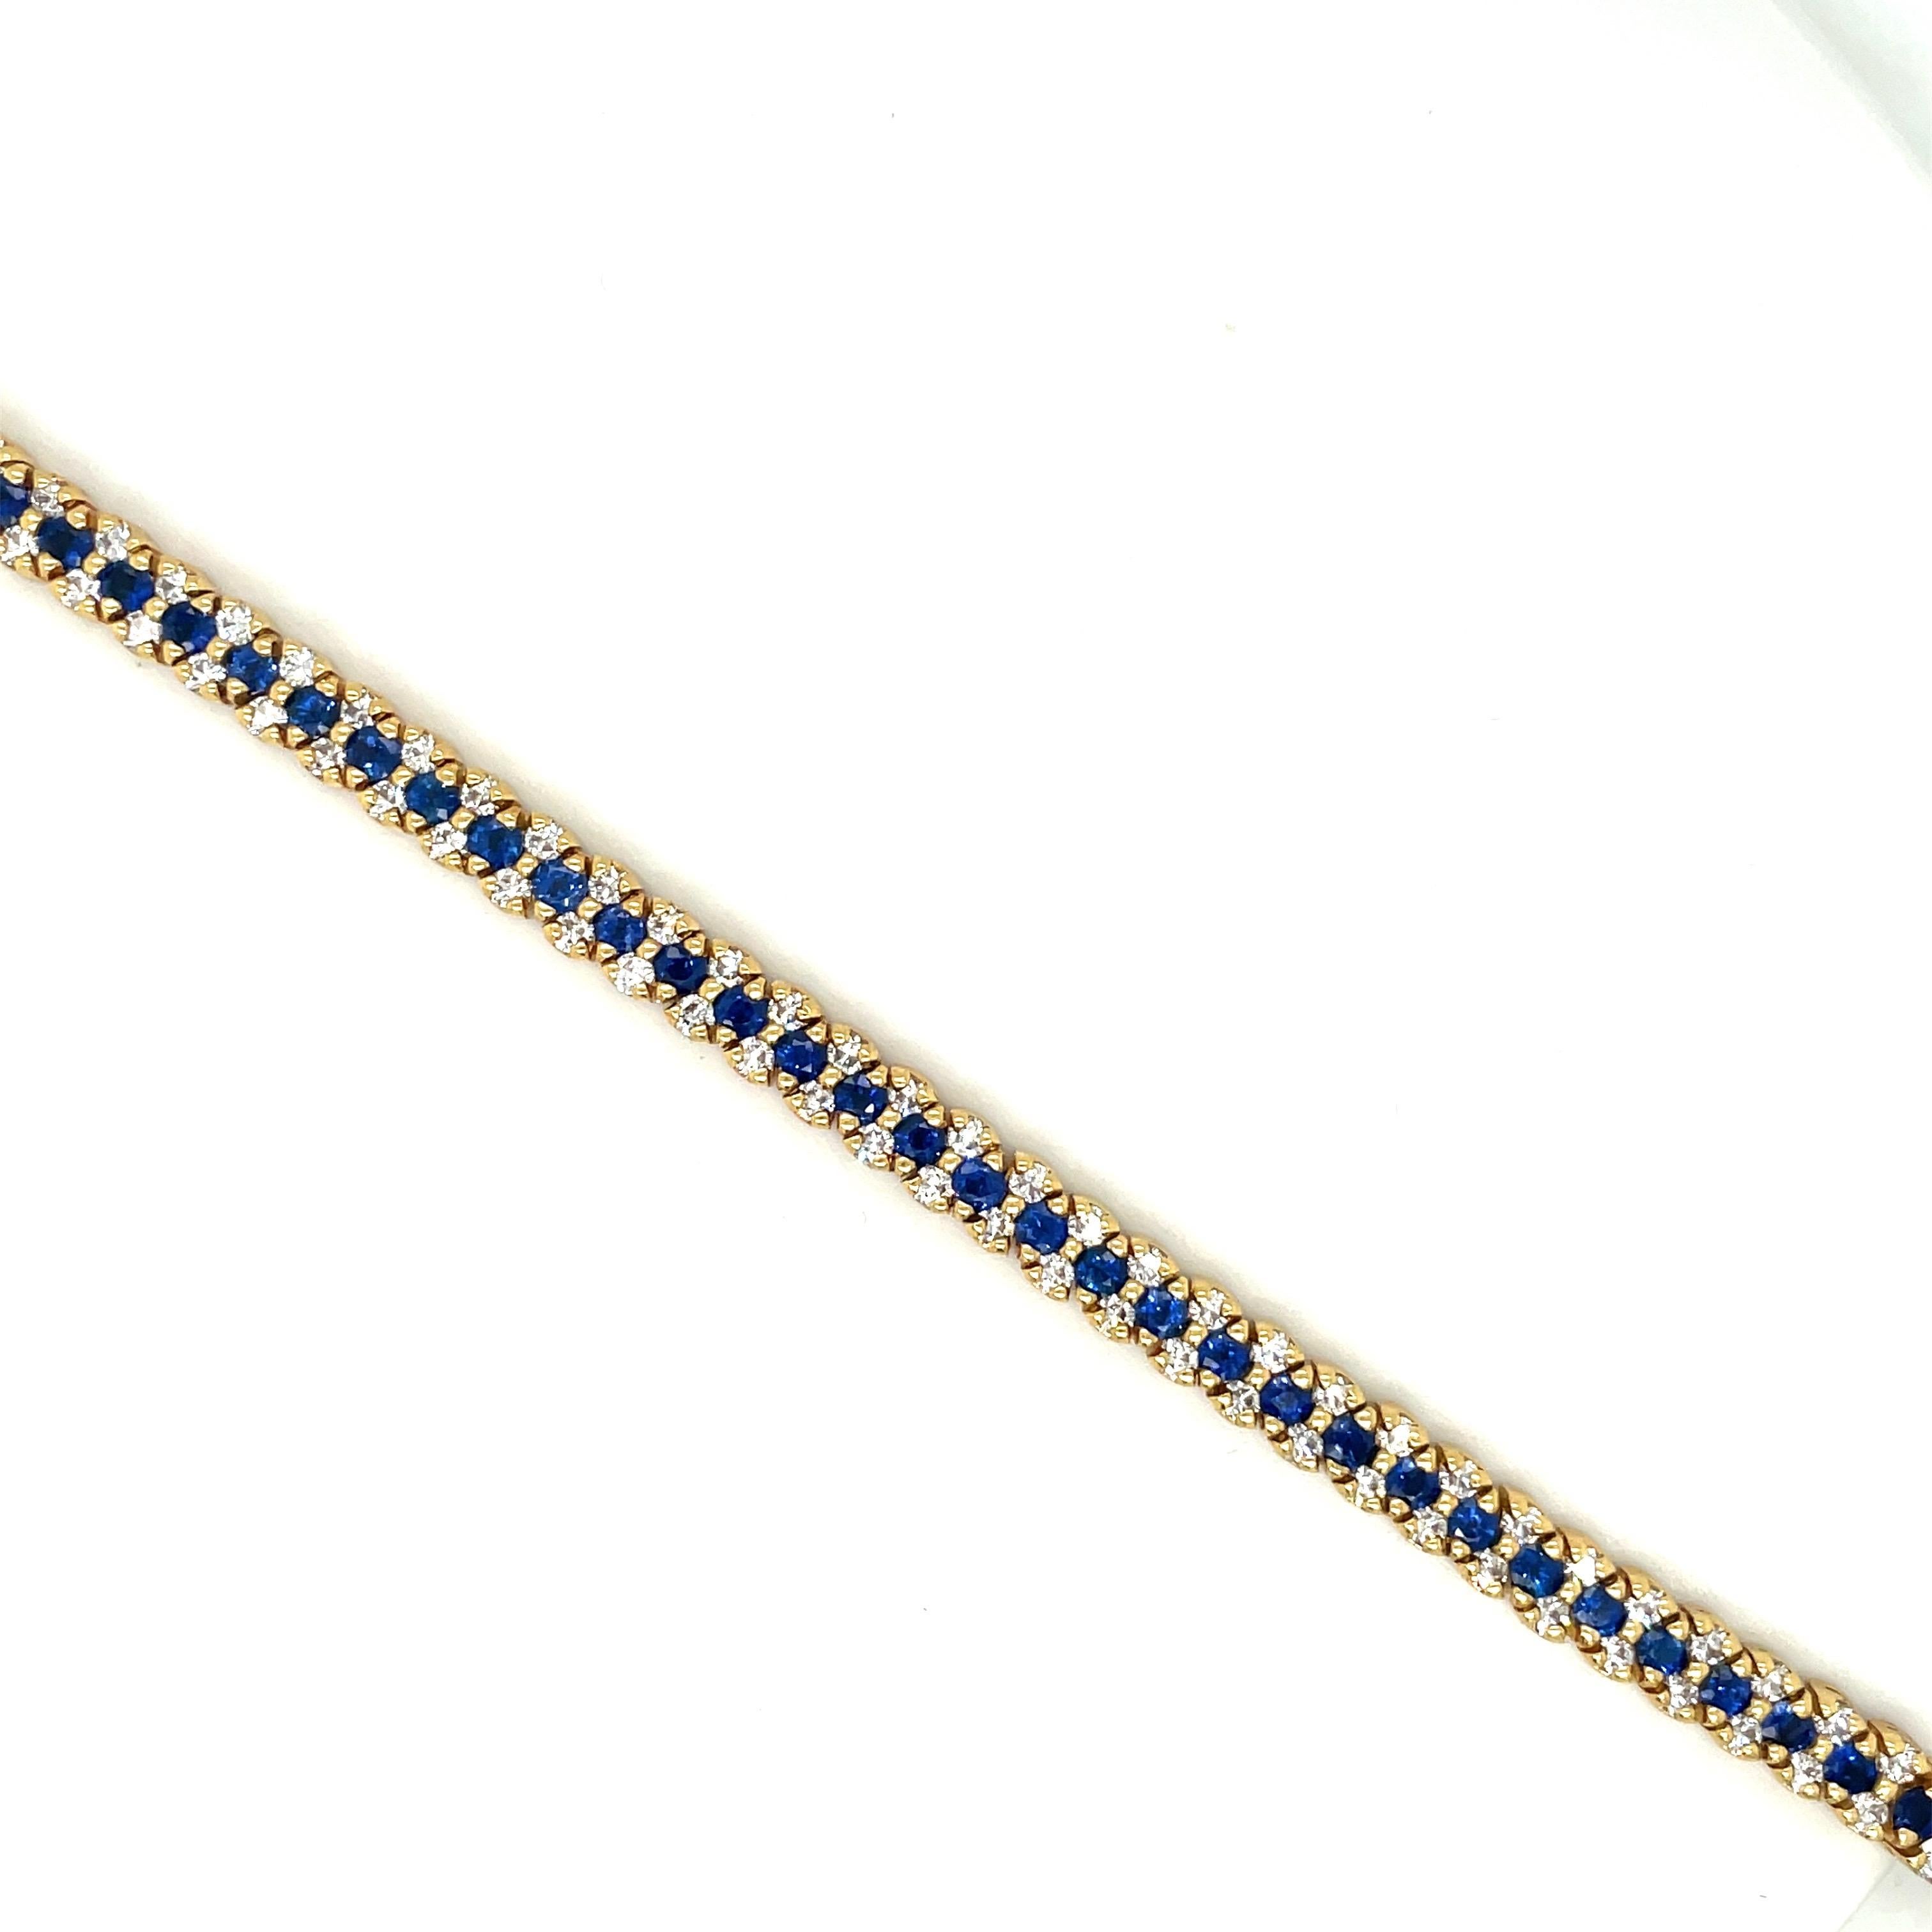 bracelet tennis en or jaune 18 carats. Ce bracelet est conçu avec une rangée centrale de saphirs bleus ronds et brillants et deux rangées de diamants ronds et brillants. Il s'agit d'un bracelet classique et intemporel. Le bracelet mesure 7